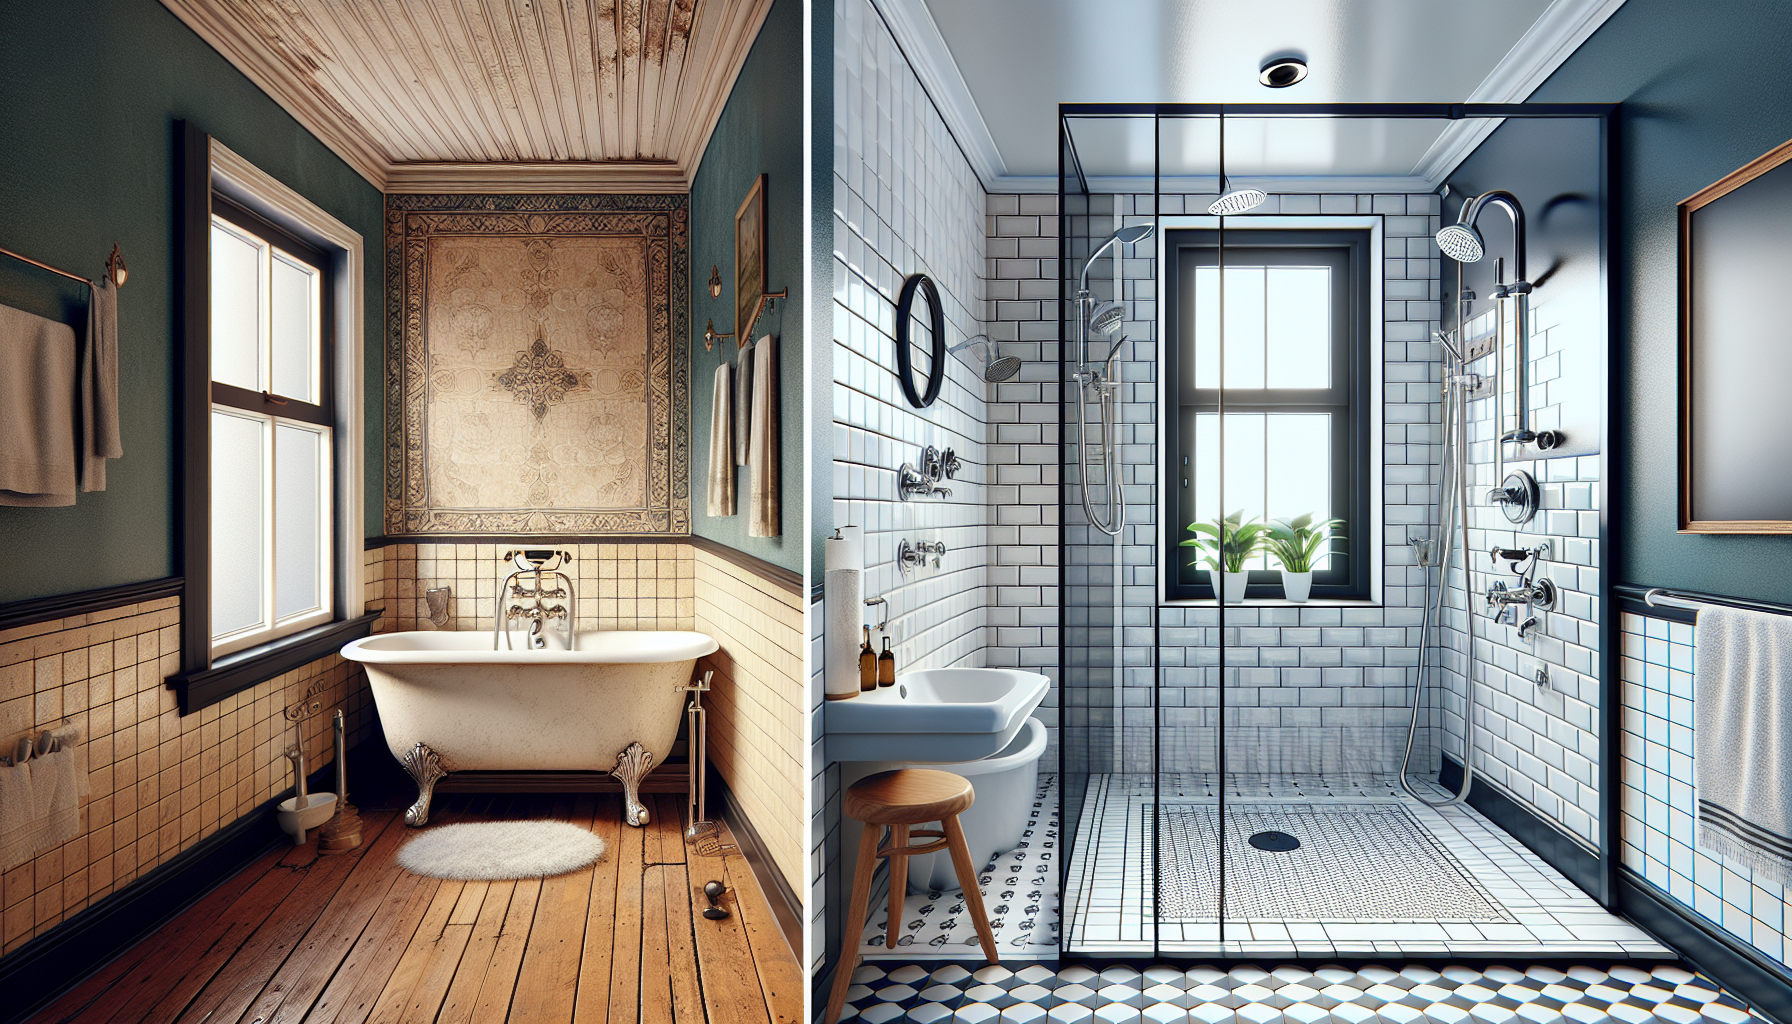 Vorher-Nachher-Bild einer Badezimmerumwandlung von einer Badewanne zu einer modernen Walk-In-Dusche